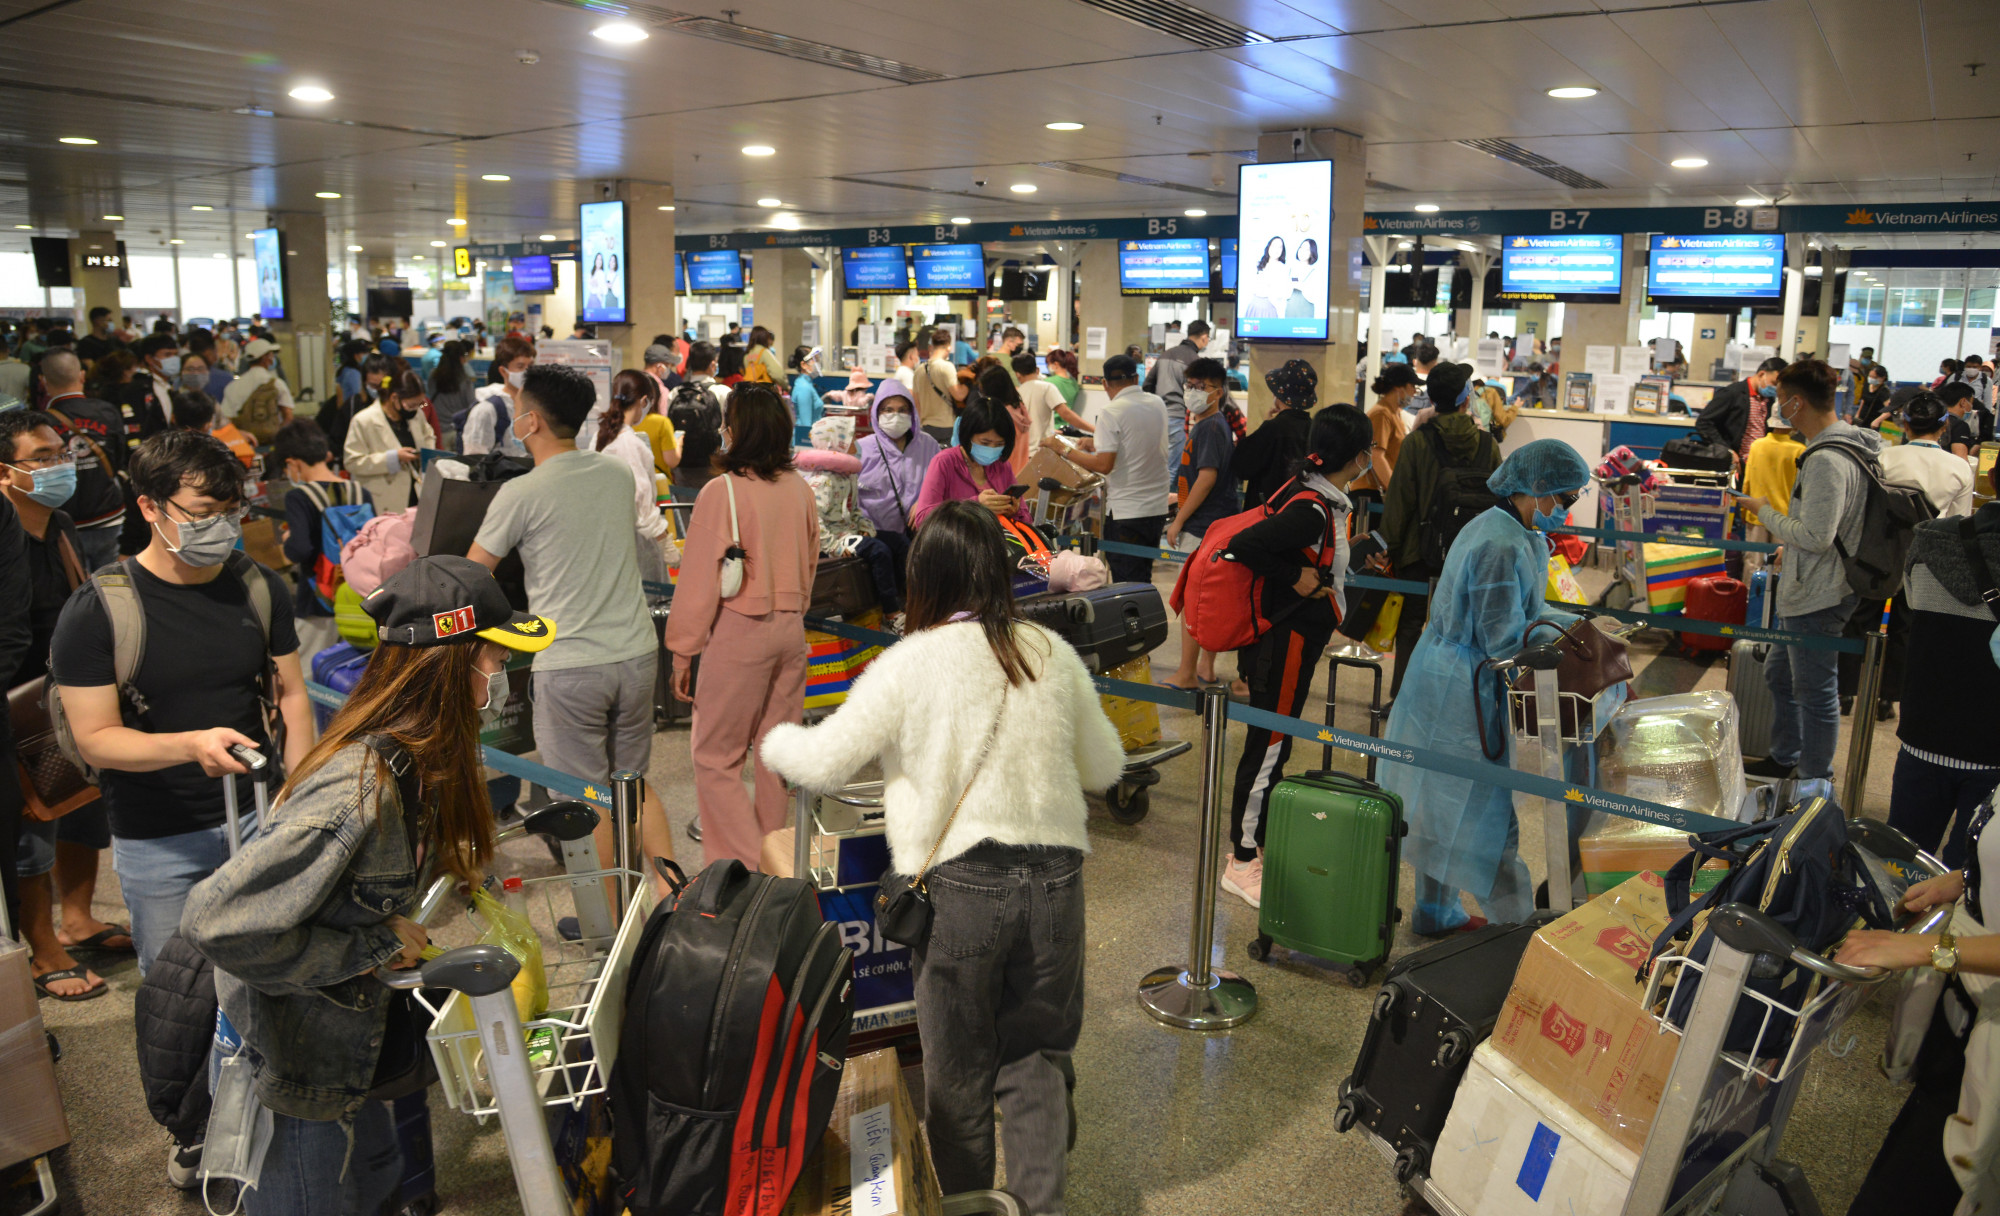 Dự án xây dựng Nhà ga hành khách T3 sẽ giải quyết tình trạng đông đúc, quá tải của sân bay Tân Sơn Nhất. Ảnh: Nhật Linh.